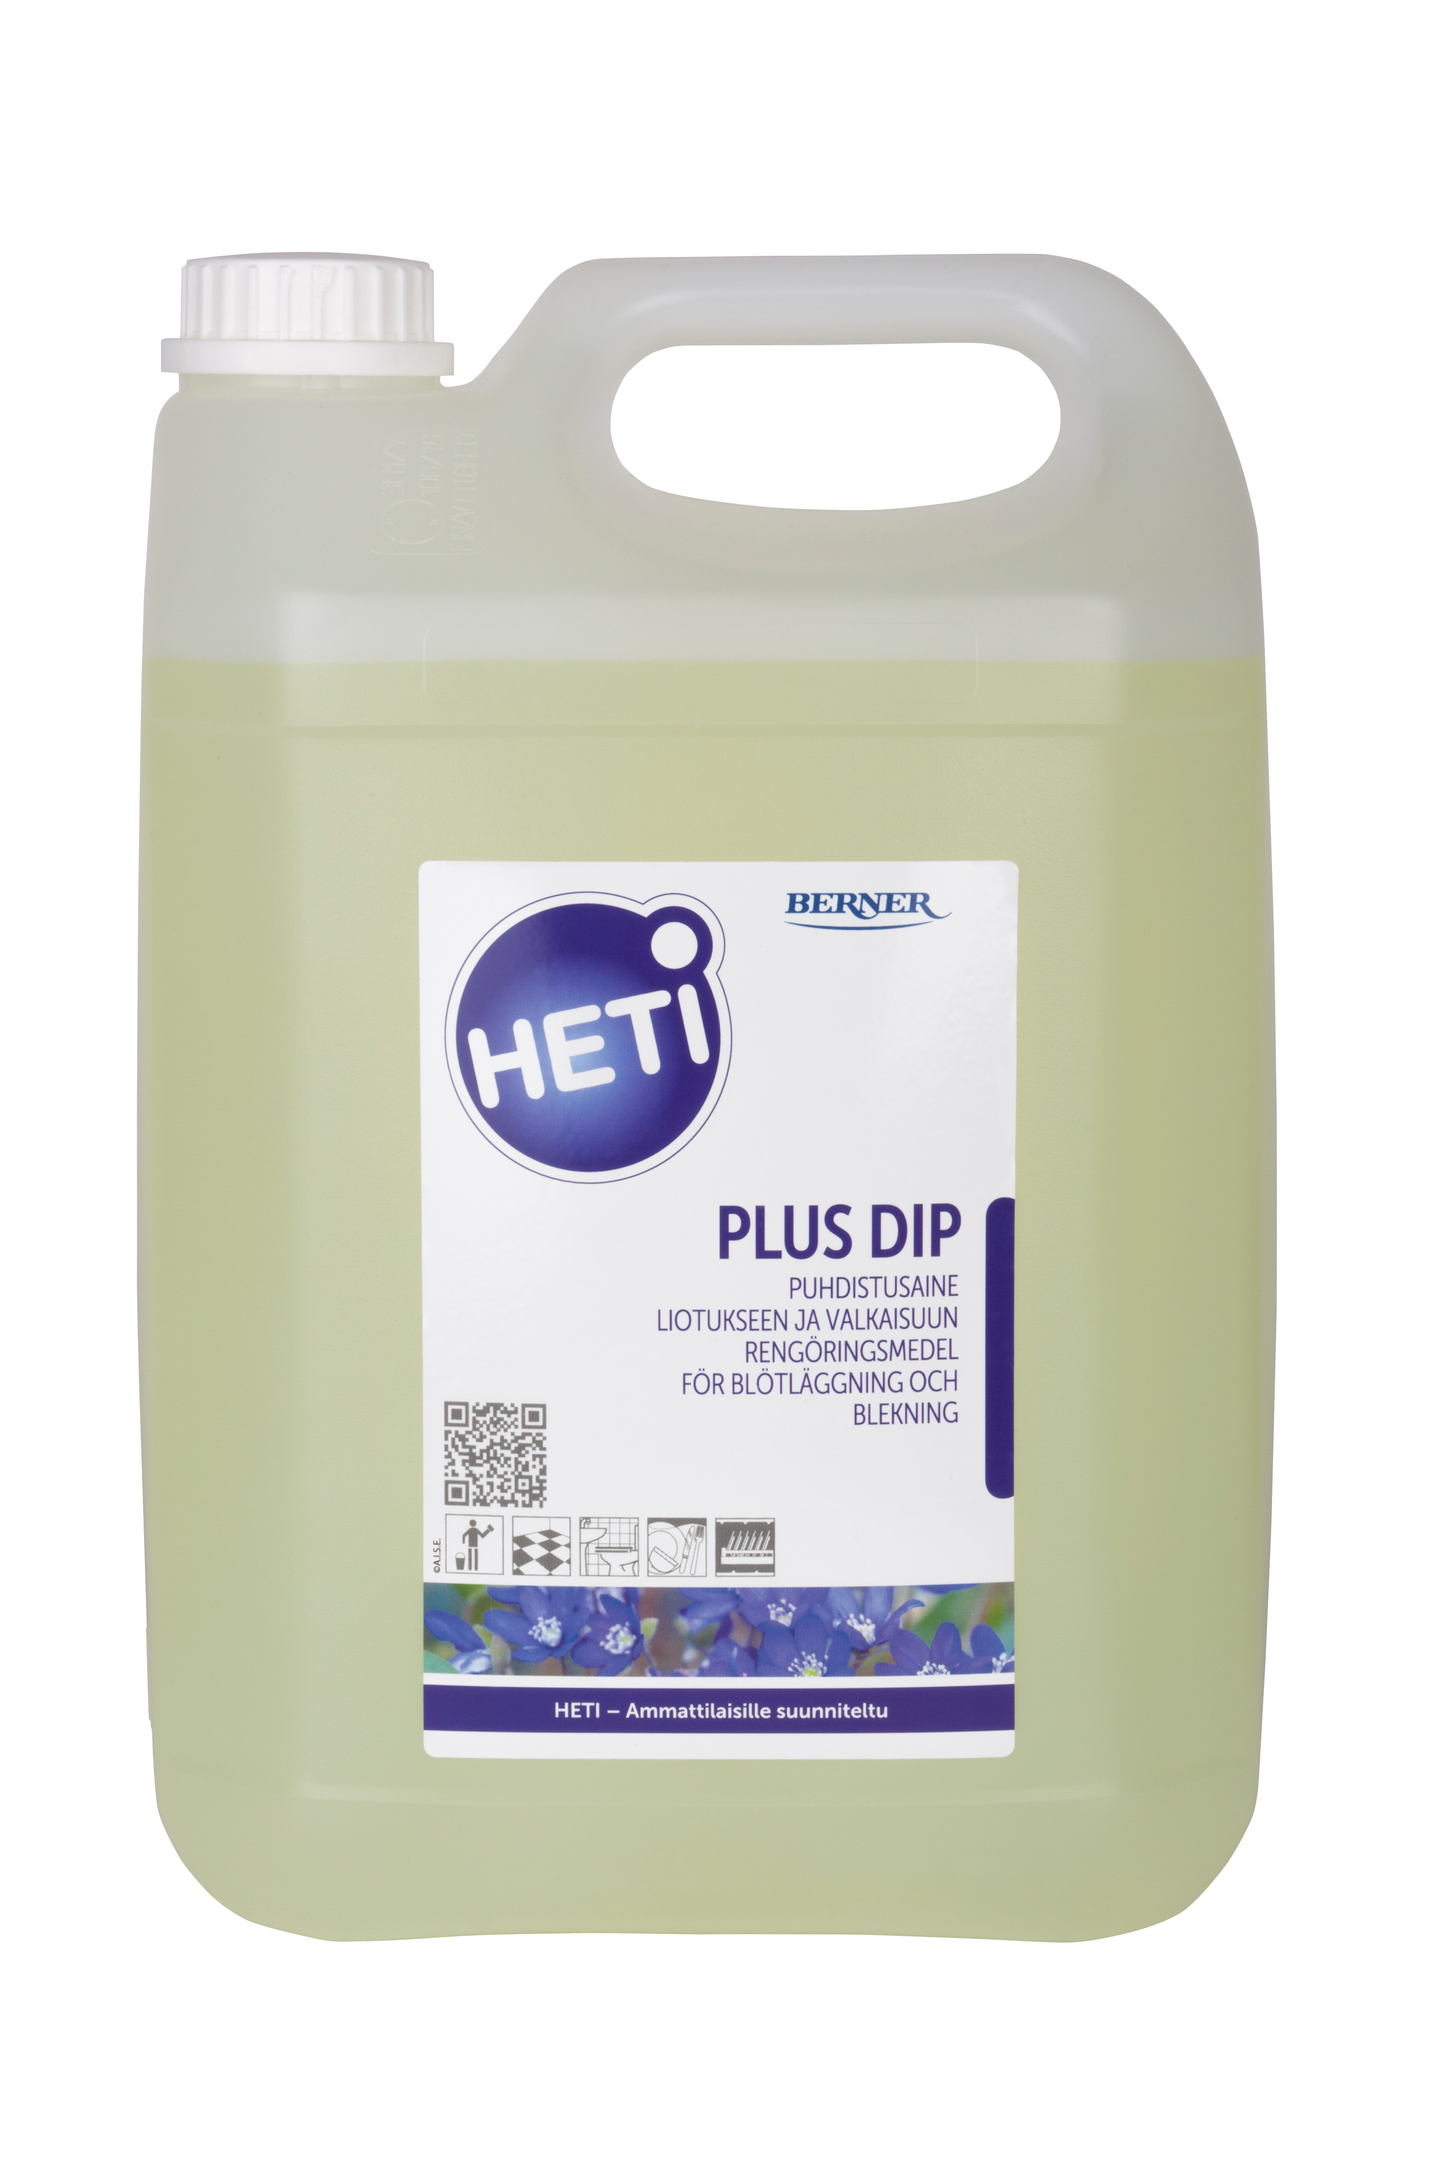 Heti Plus Dip puhdistusaine liotukseen ja valkaisuun 5l